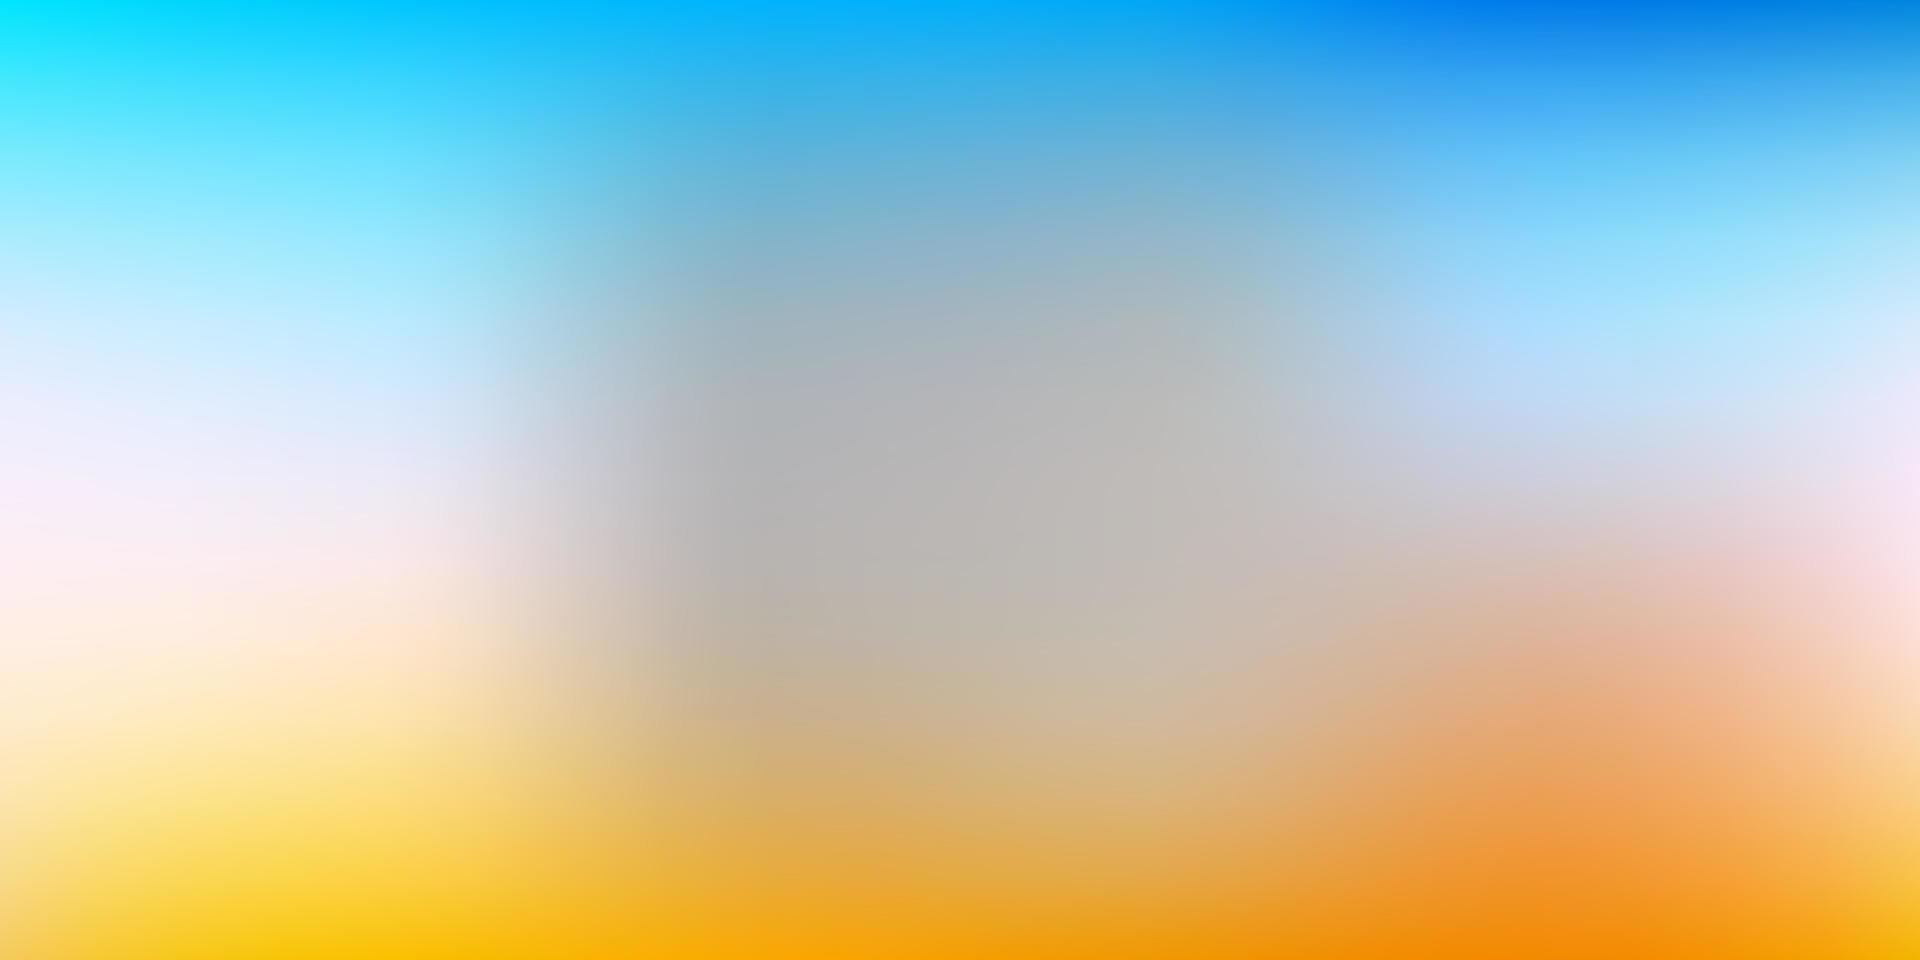 Light Blue, Yellow vector gradient blur template.